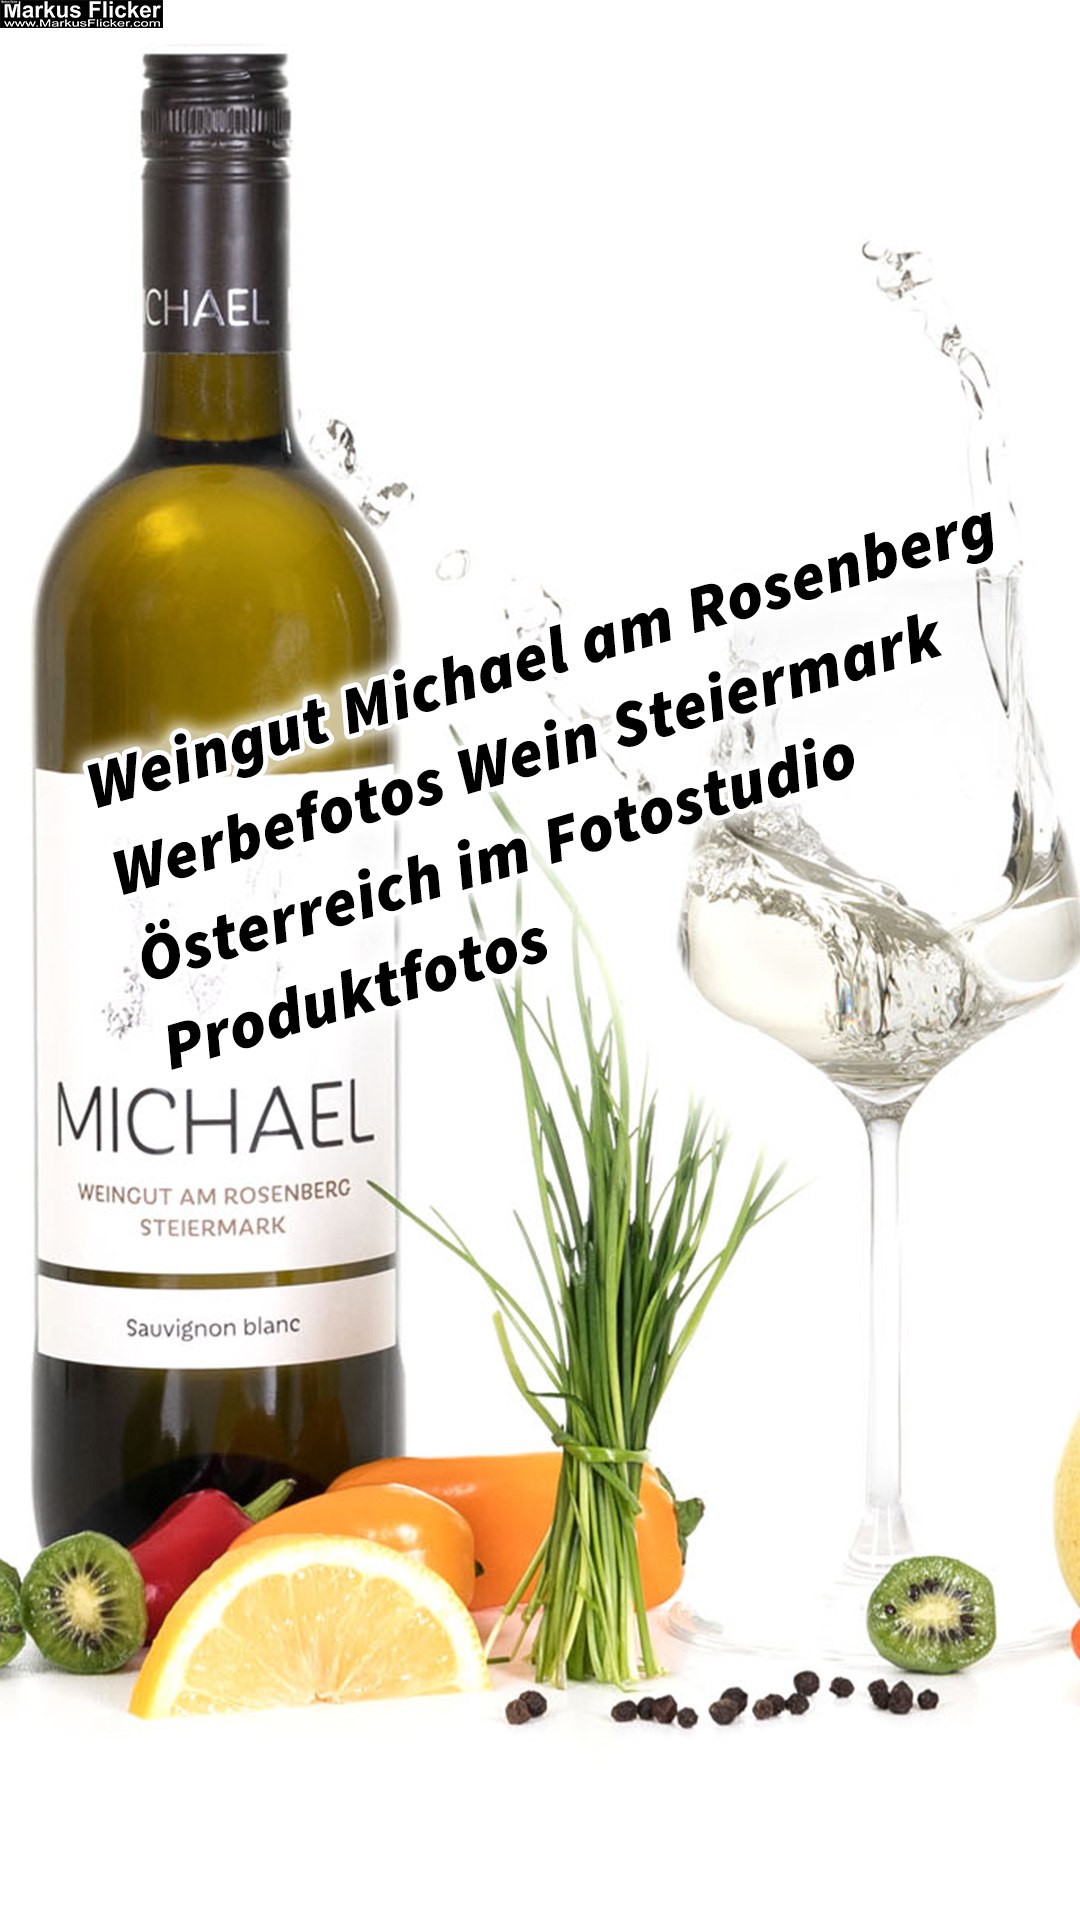 Weingut Michael am Rosenberg Werbefotos Wein Steiermark Österreich im Fotostudio Produktfotos